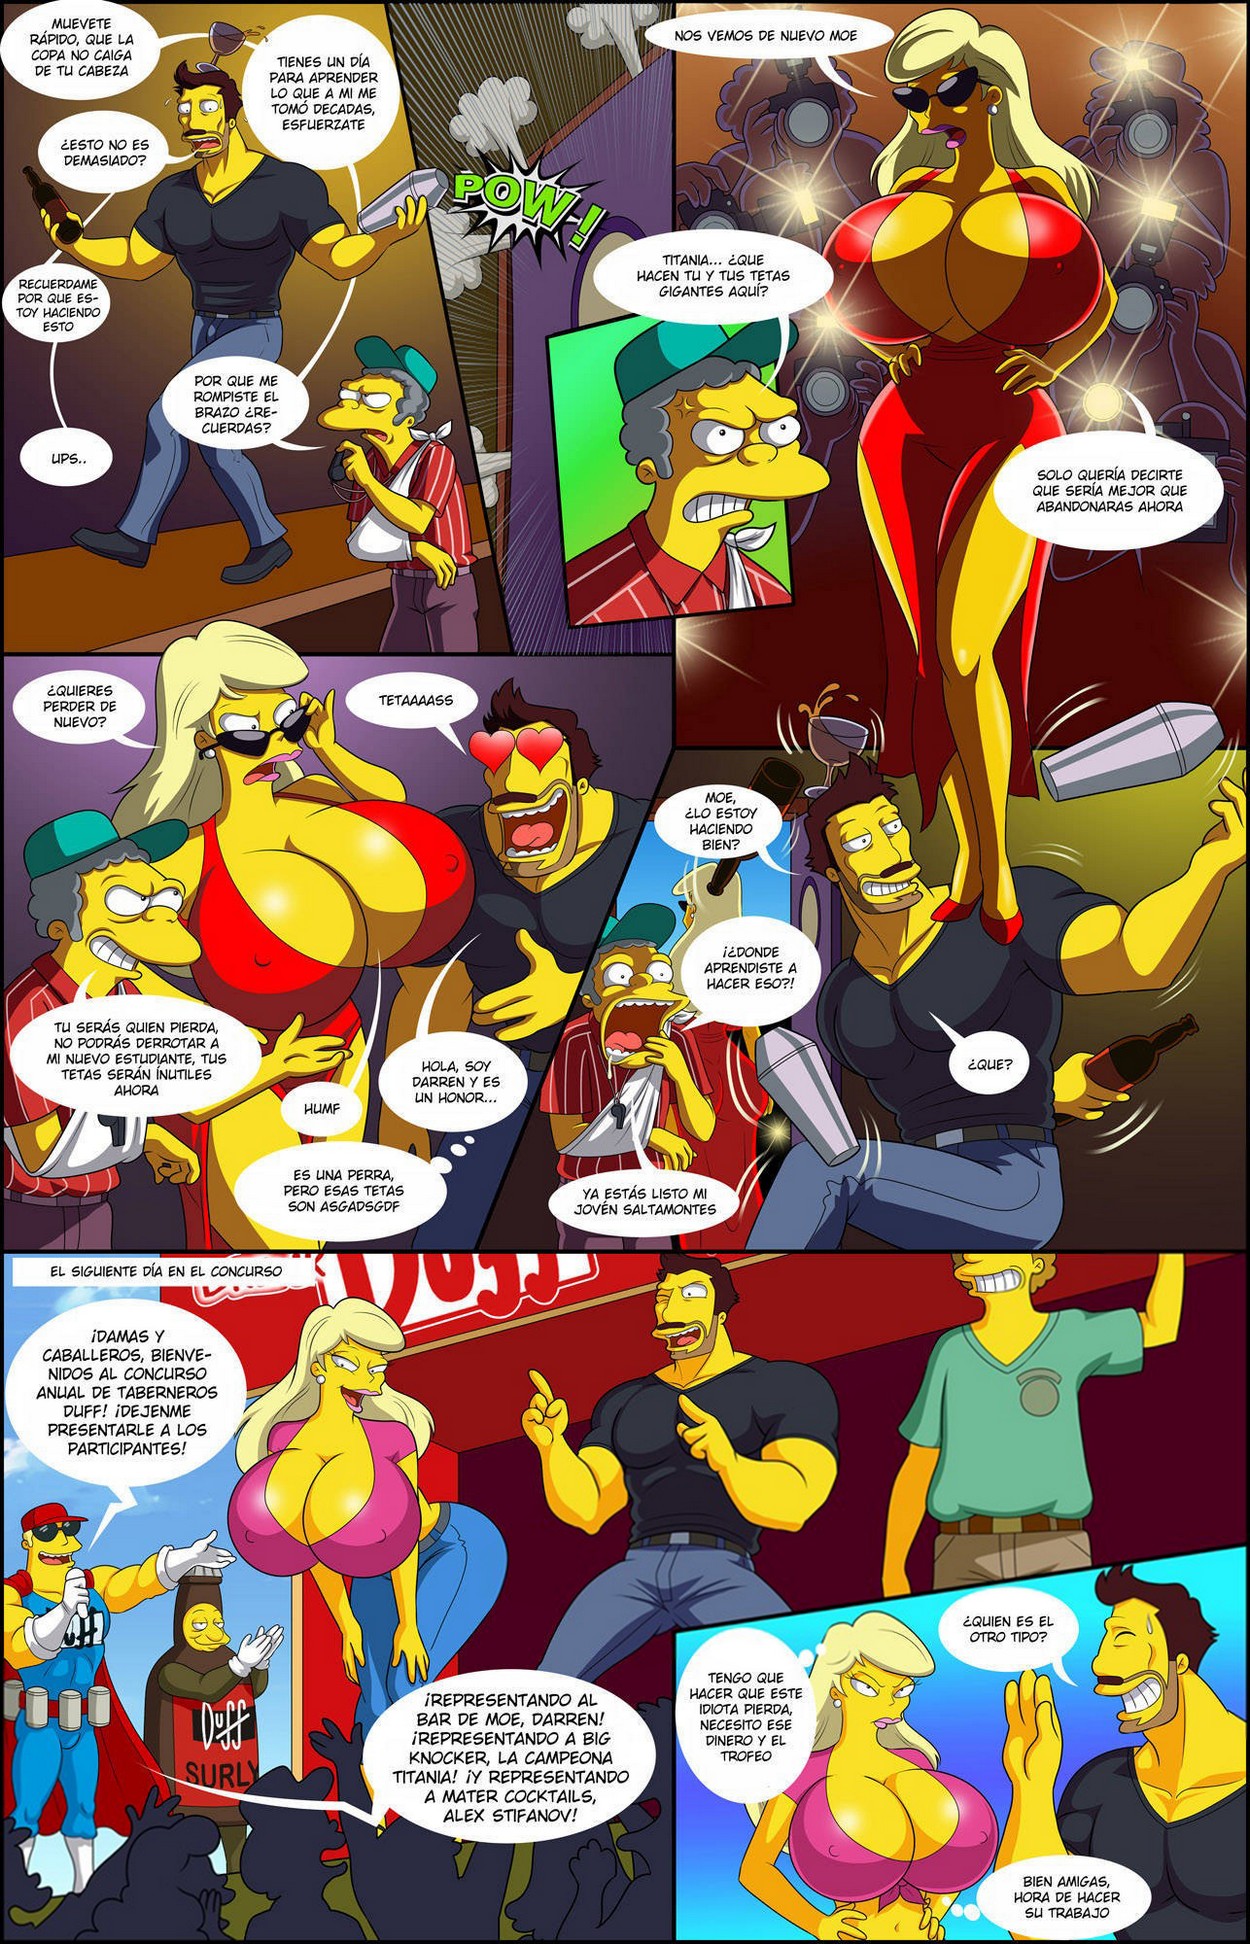 La Aventura de Darren 5 – Los Simpsons - a67a9a4a6b2ed87fa9b8cd6d62dfc538